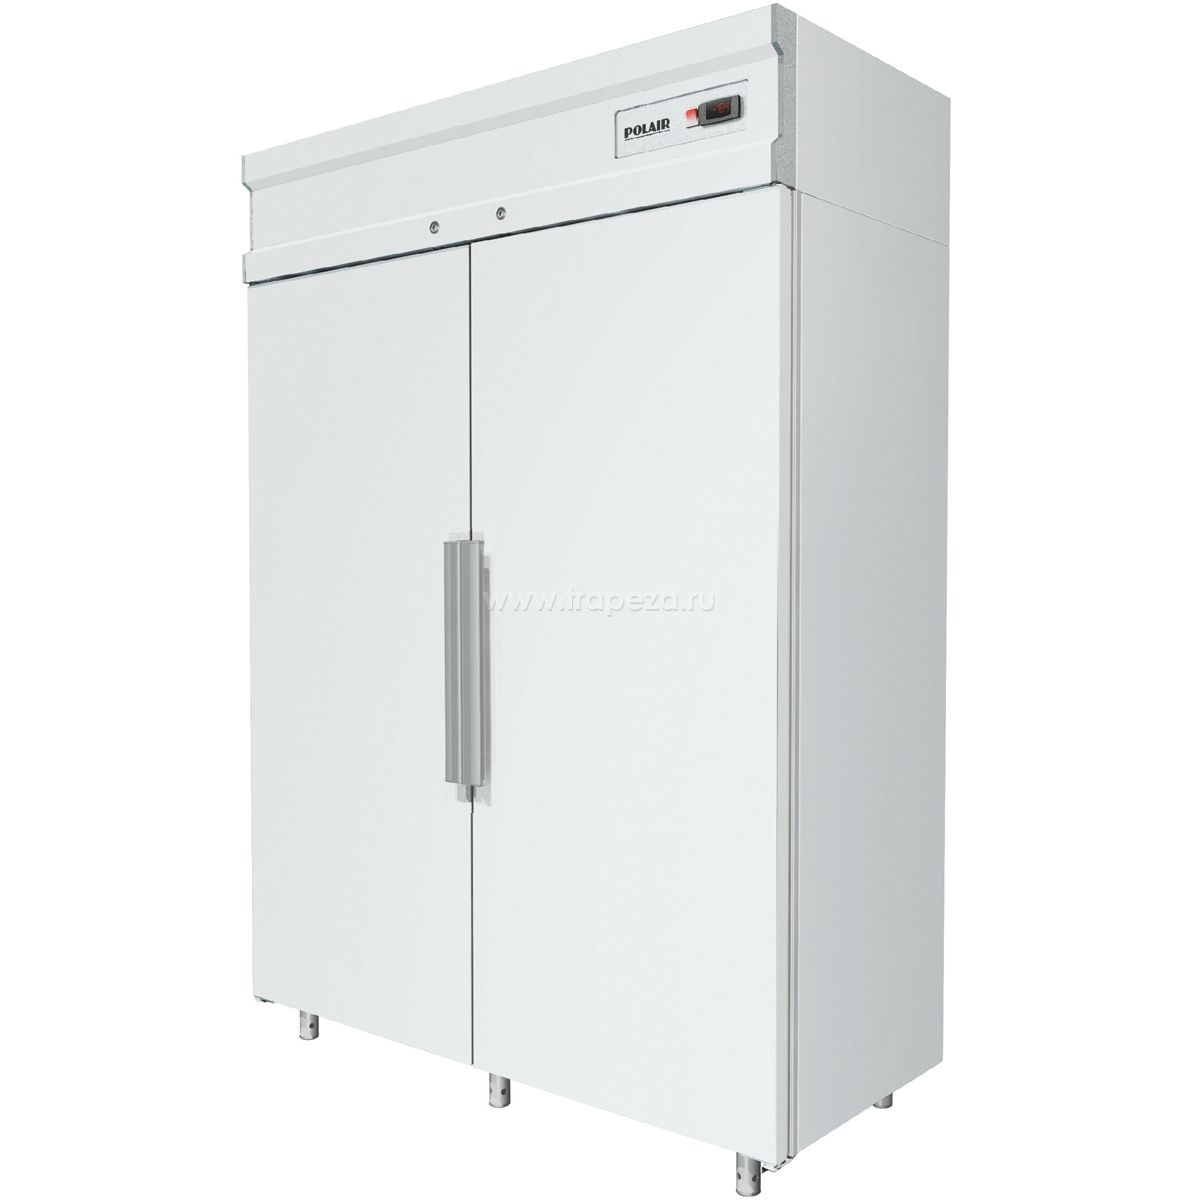 холодильный шкаф полаир низкотемпературный